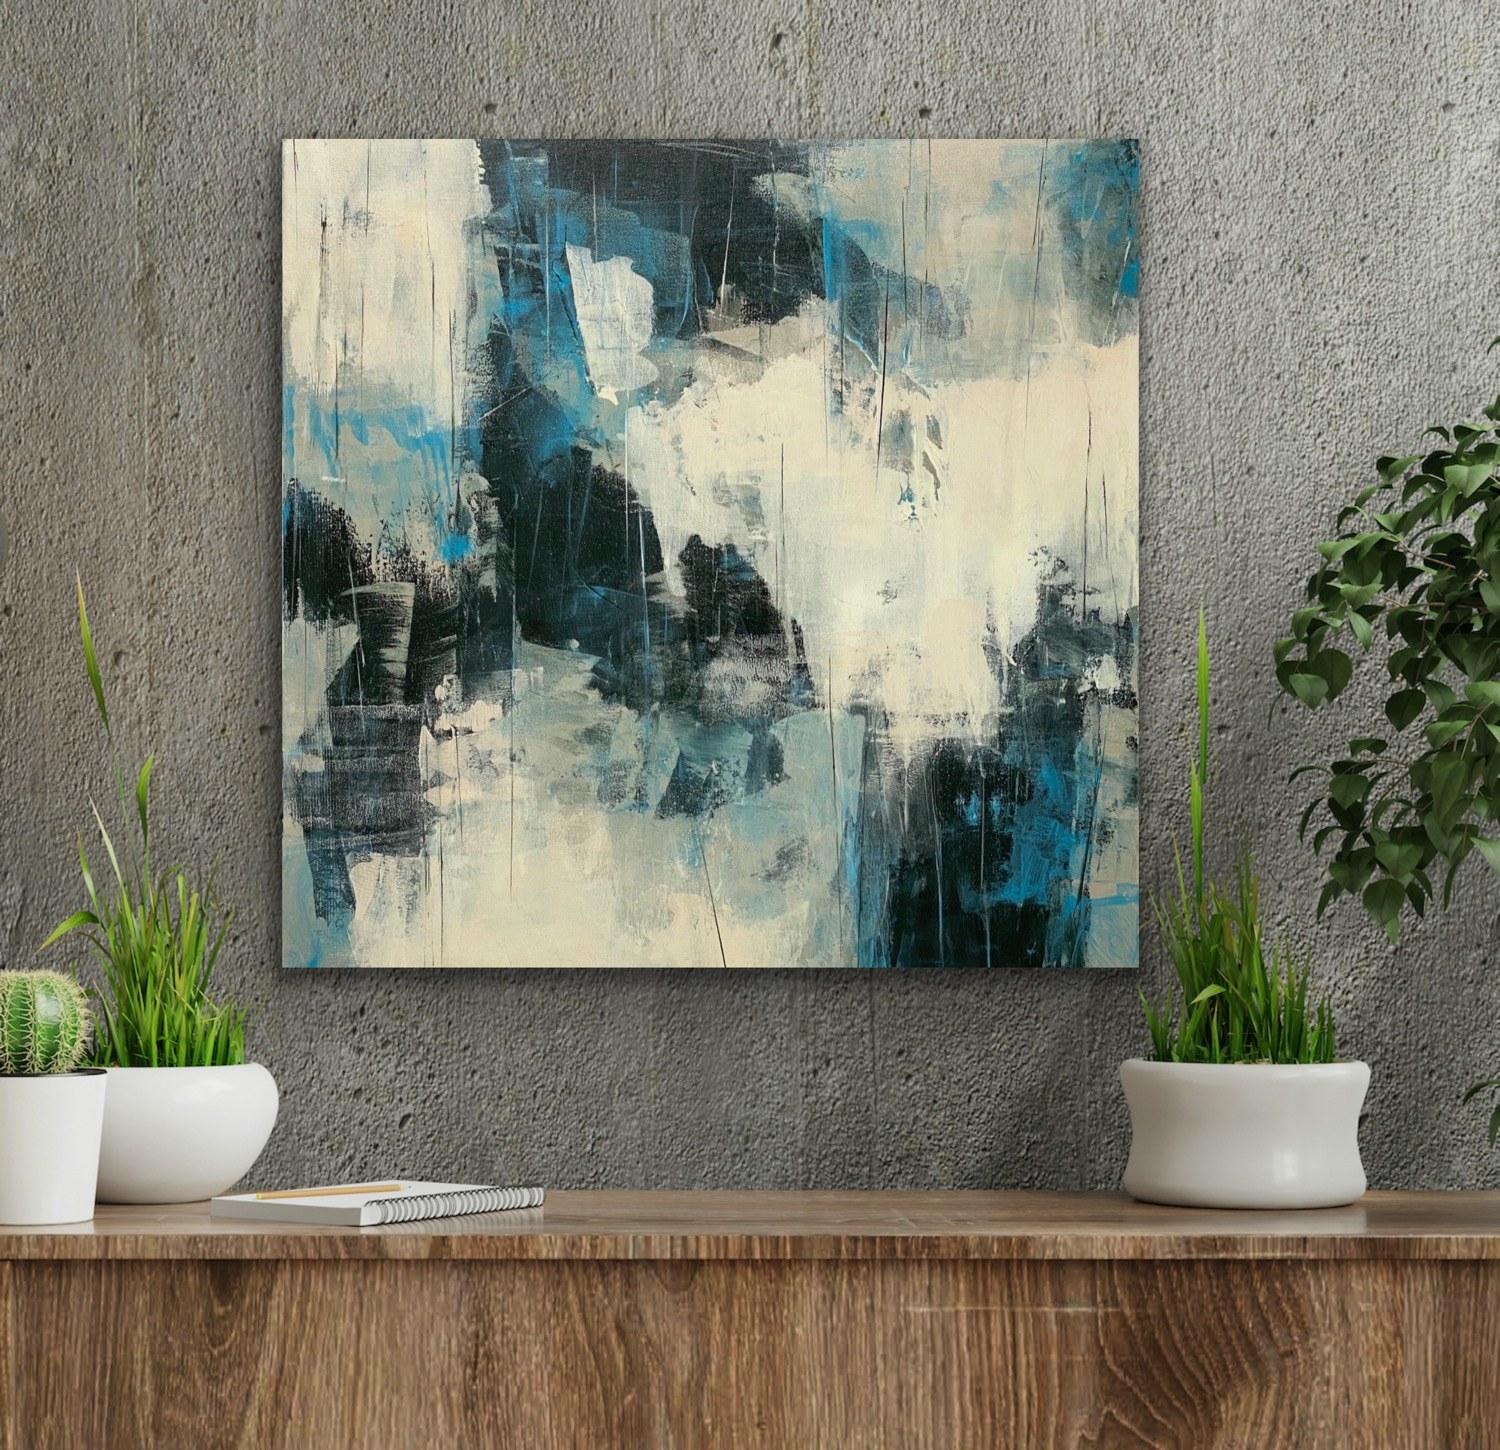 Cutting Edge, blau, schwarz, weiß, grau, abstrakter Expressionismus (Abstrakter Impressionismus), Painting, von Juanita Bellavance 